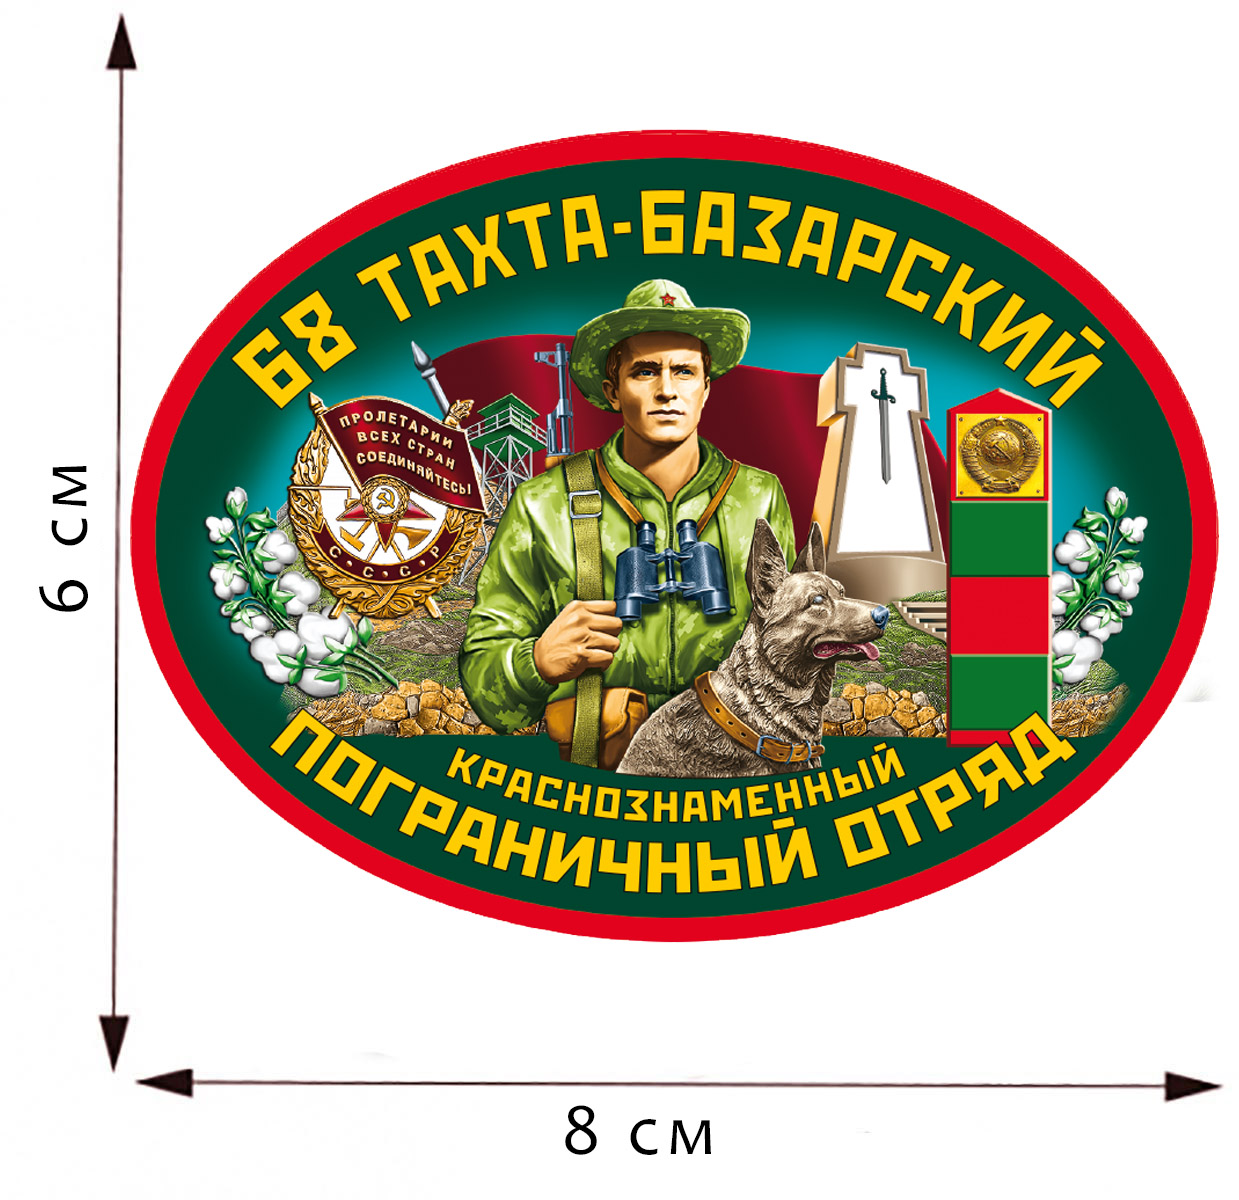 Термотрансфер "68 Тахта-Базарский ПОГО" на одежду